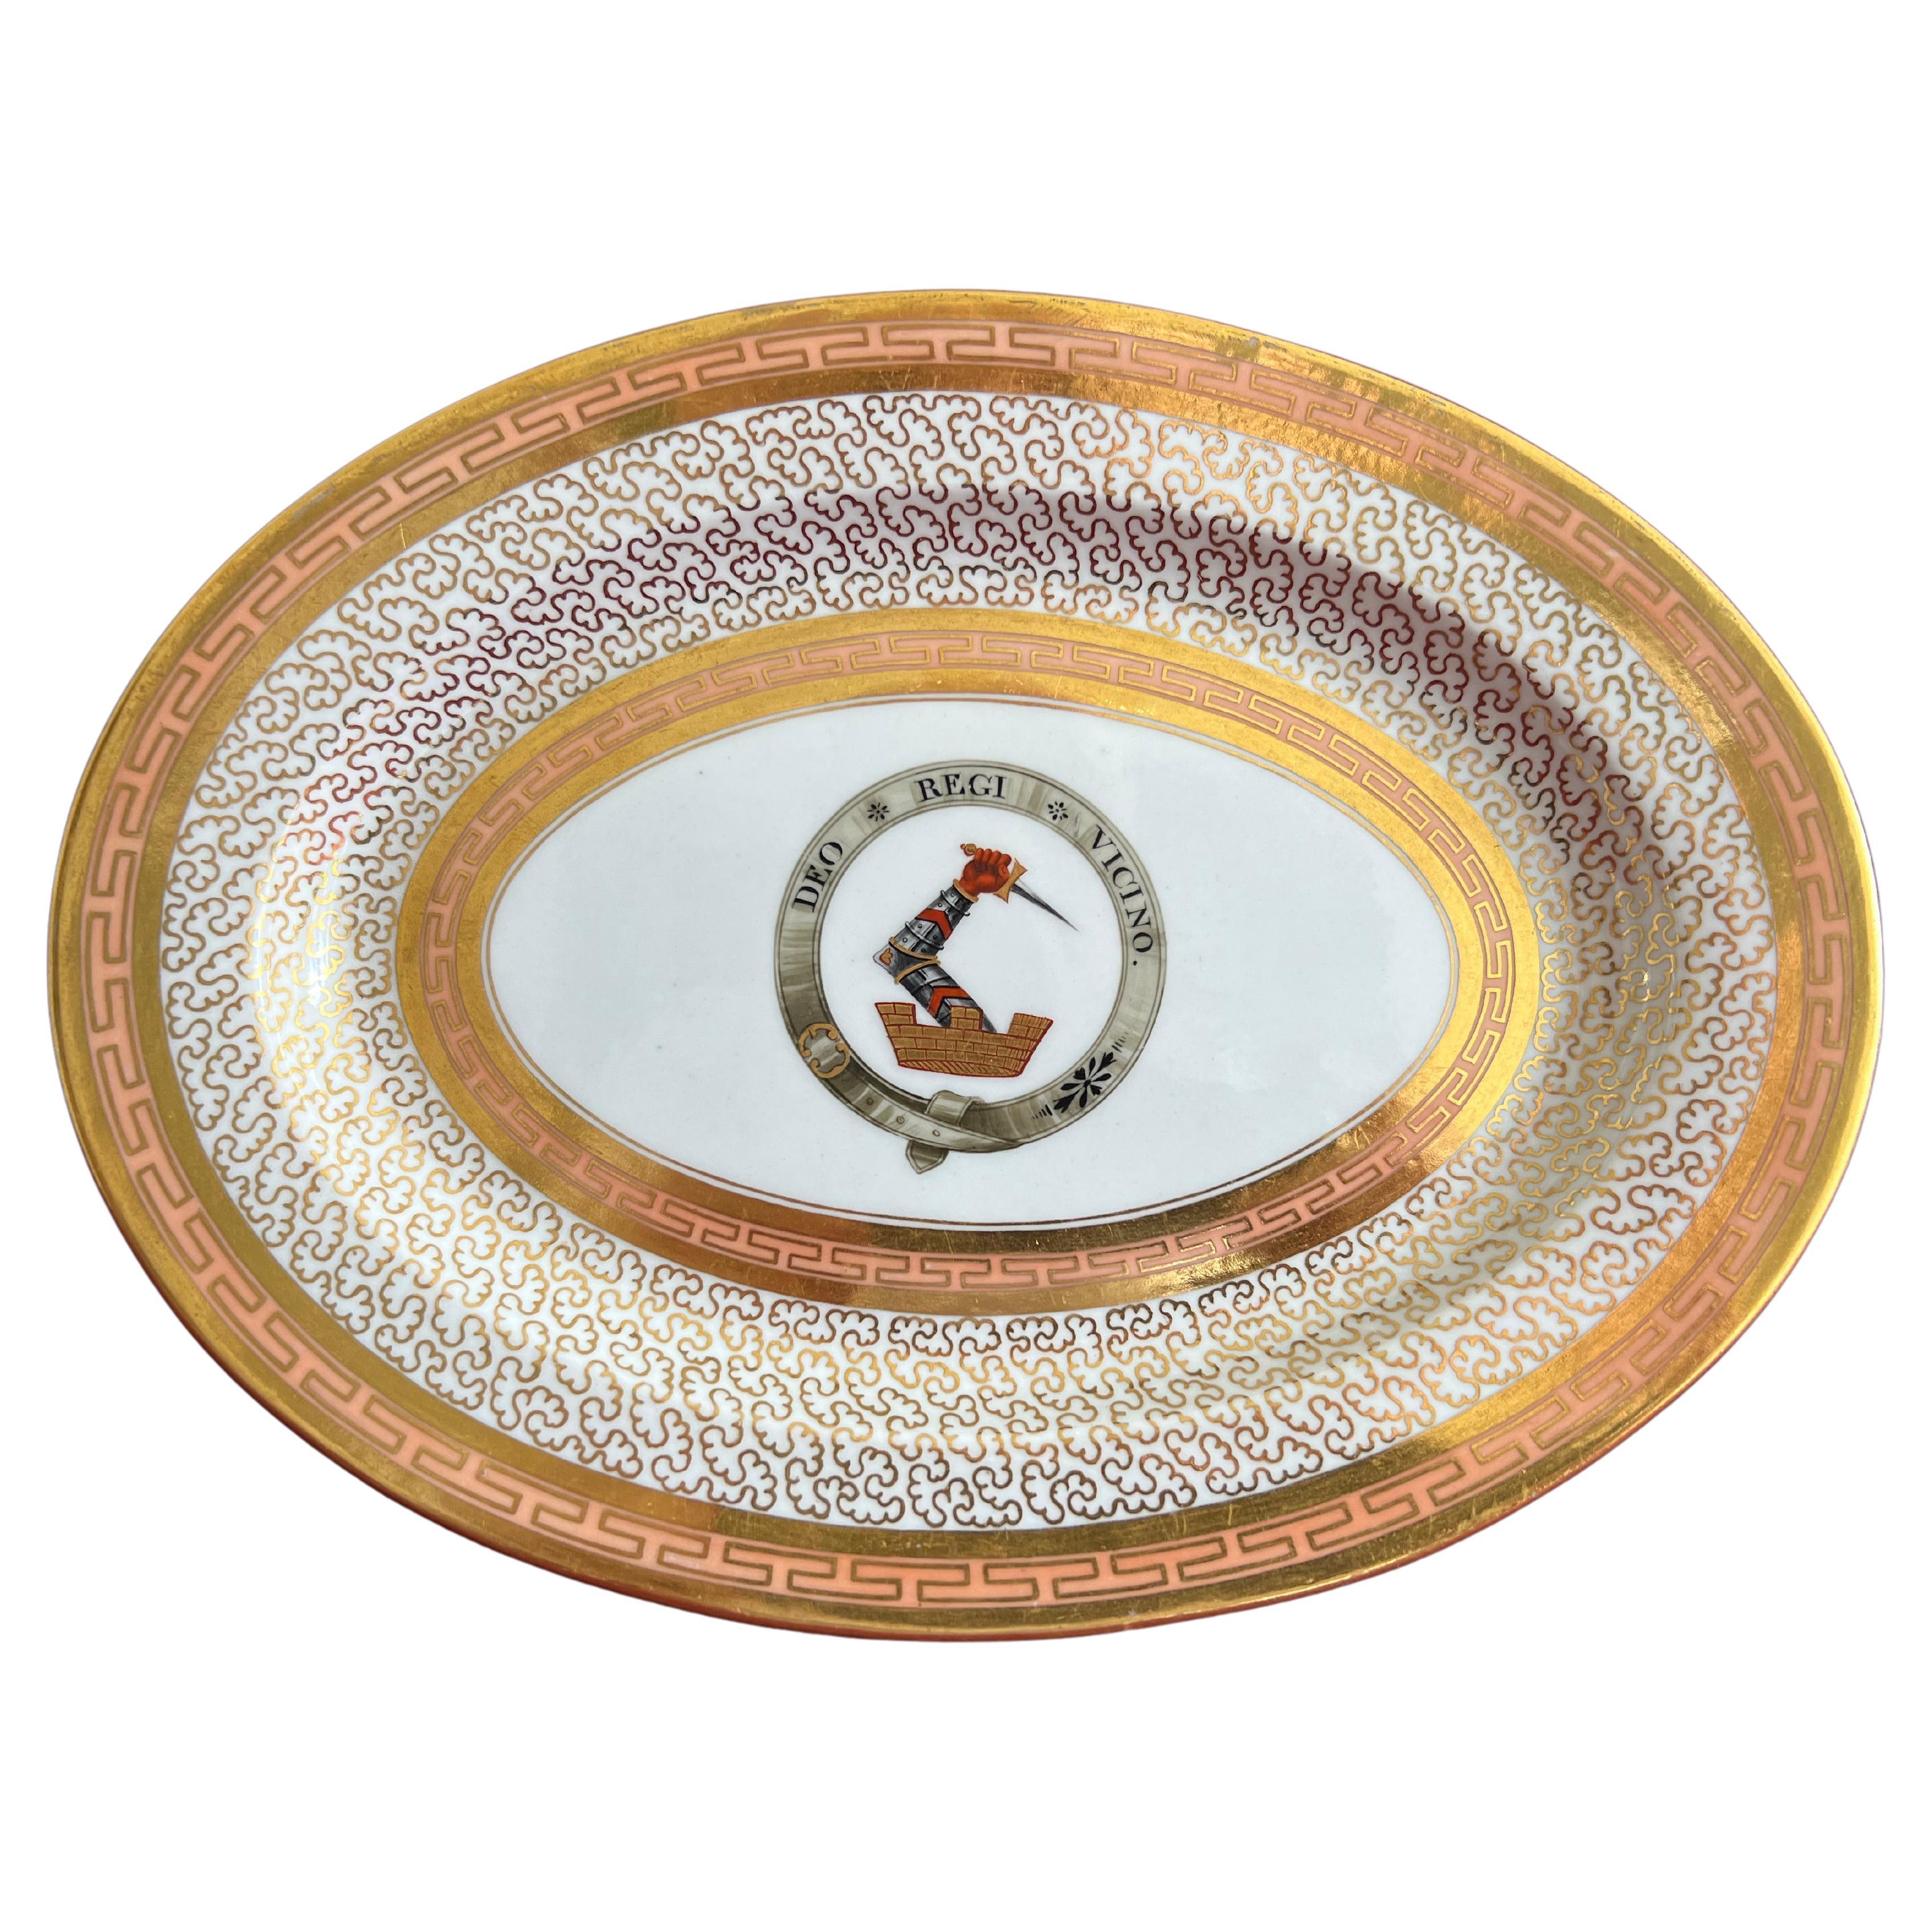 Eccezionale piatto in porcellana Barr Flight, Barr & Barr Worcester, 1804-1813